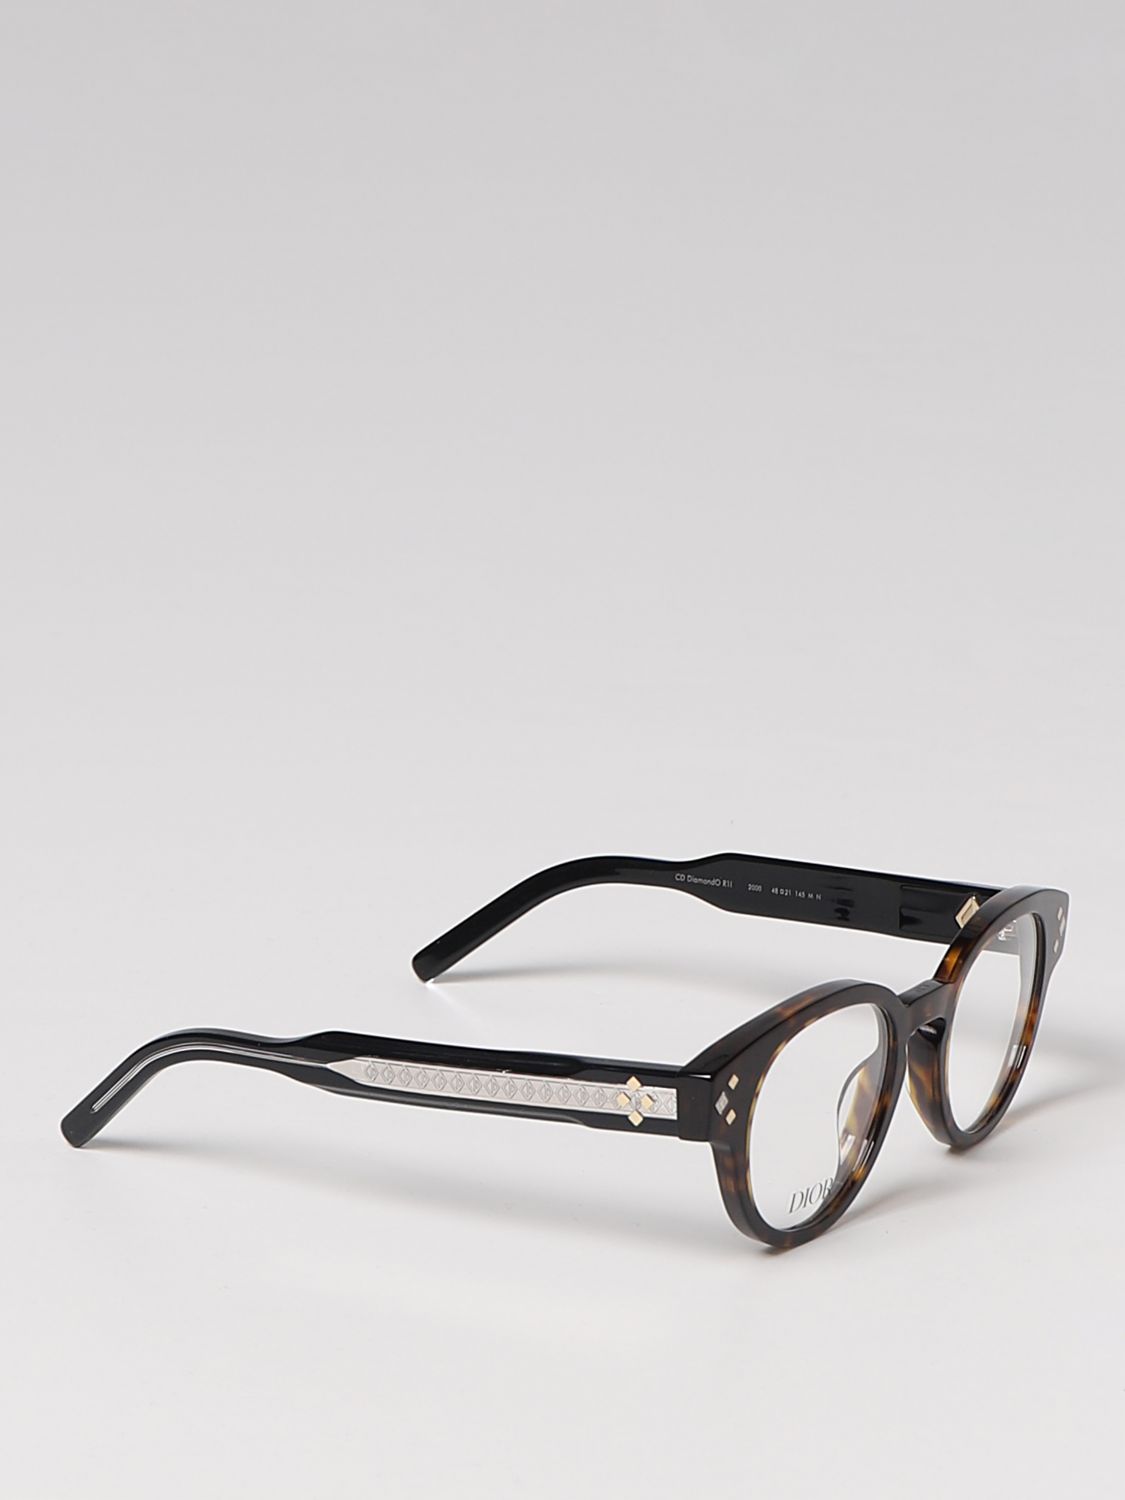 Designer Frames Outlet Dior Homme Eyeglasses 0221